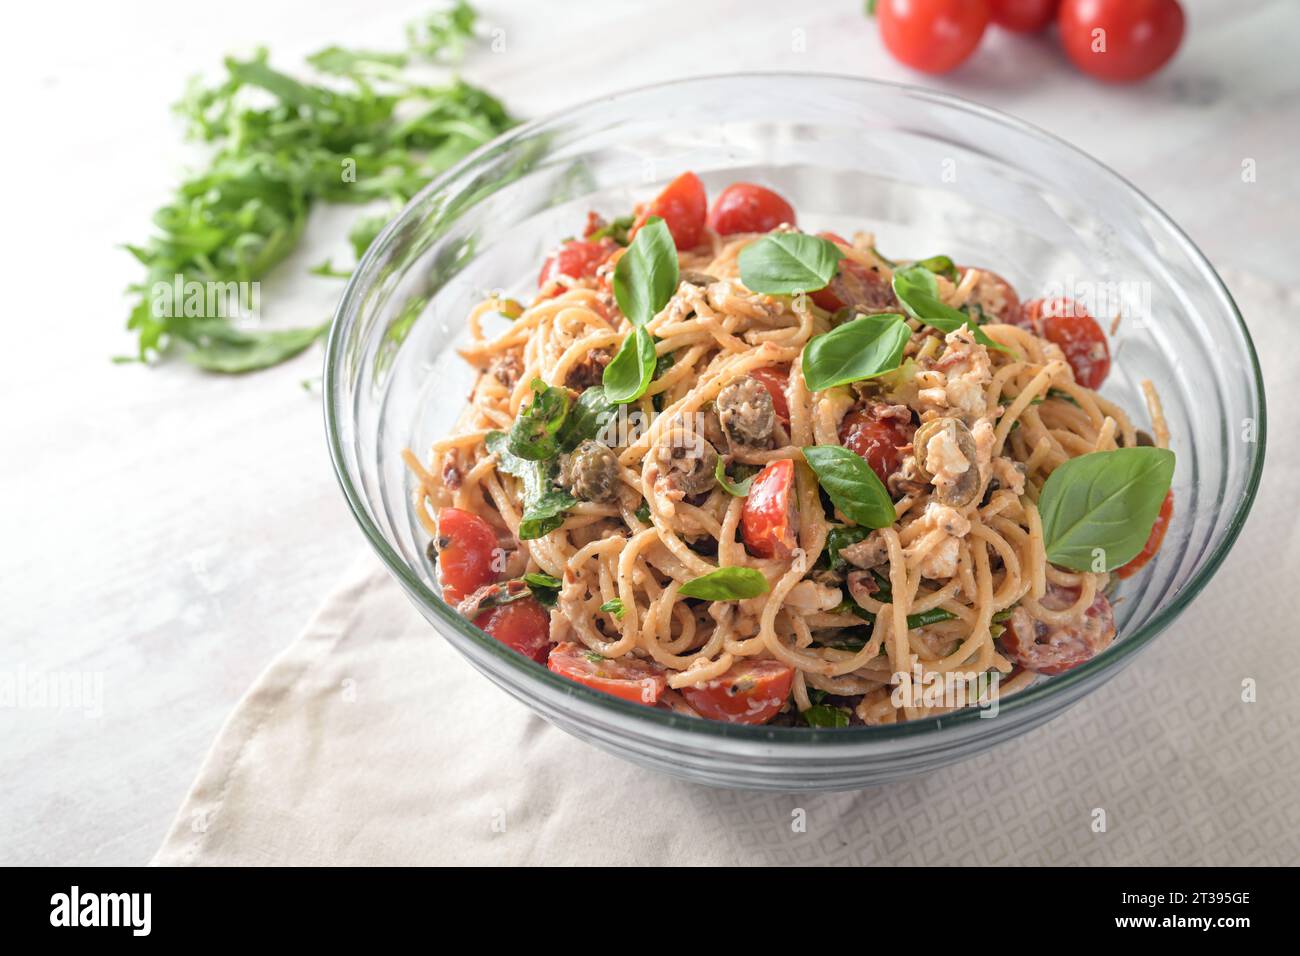 Mediterraner Partysalat aus Spaghetti mit Tomaten, Rucola, Mozzarella, Oliven und Basilikum in einer Glasschale auf einem weiß bemalten Tisch, Kopierraum, Sell Stockfoto